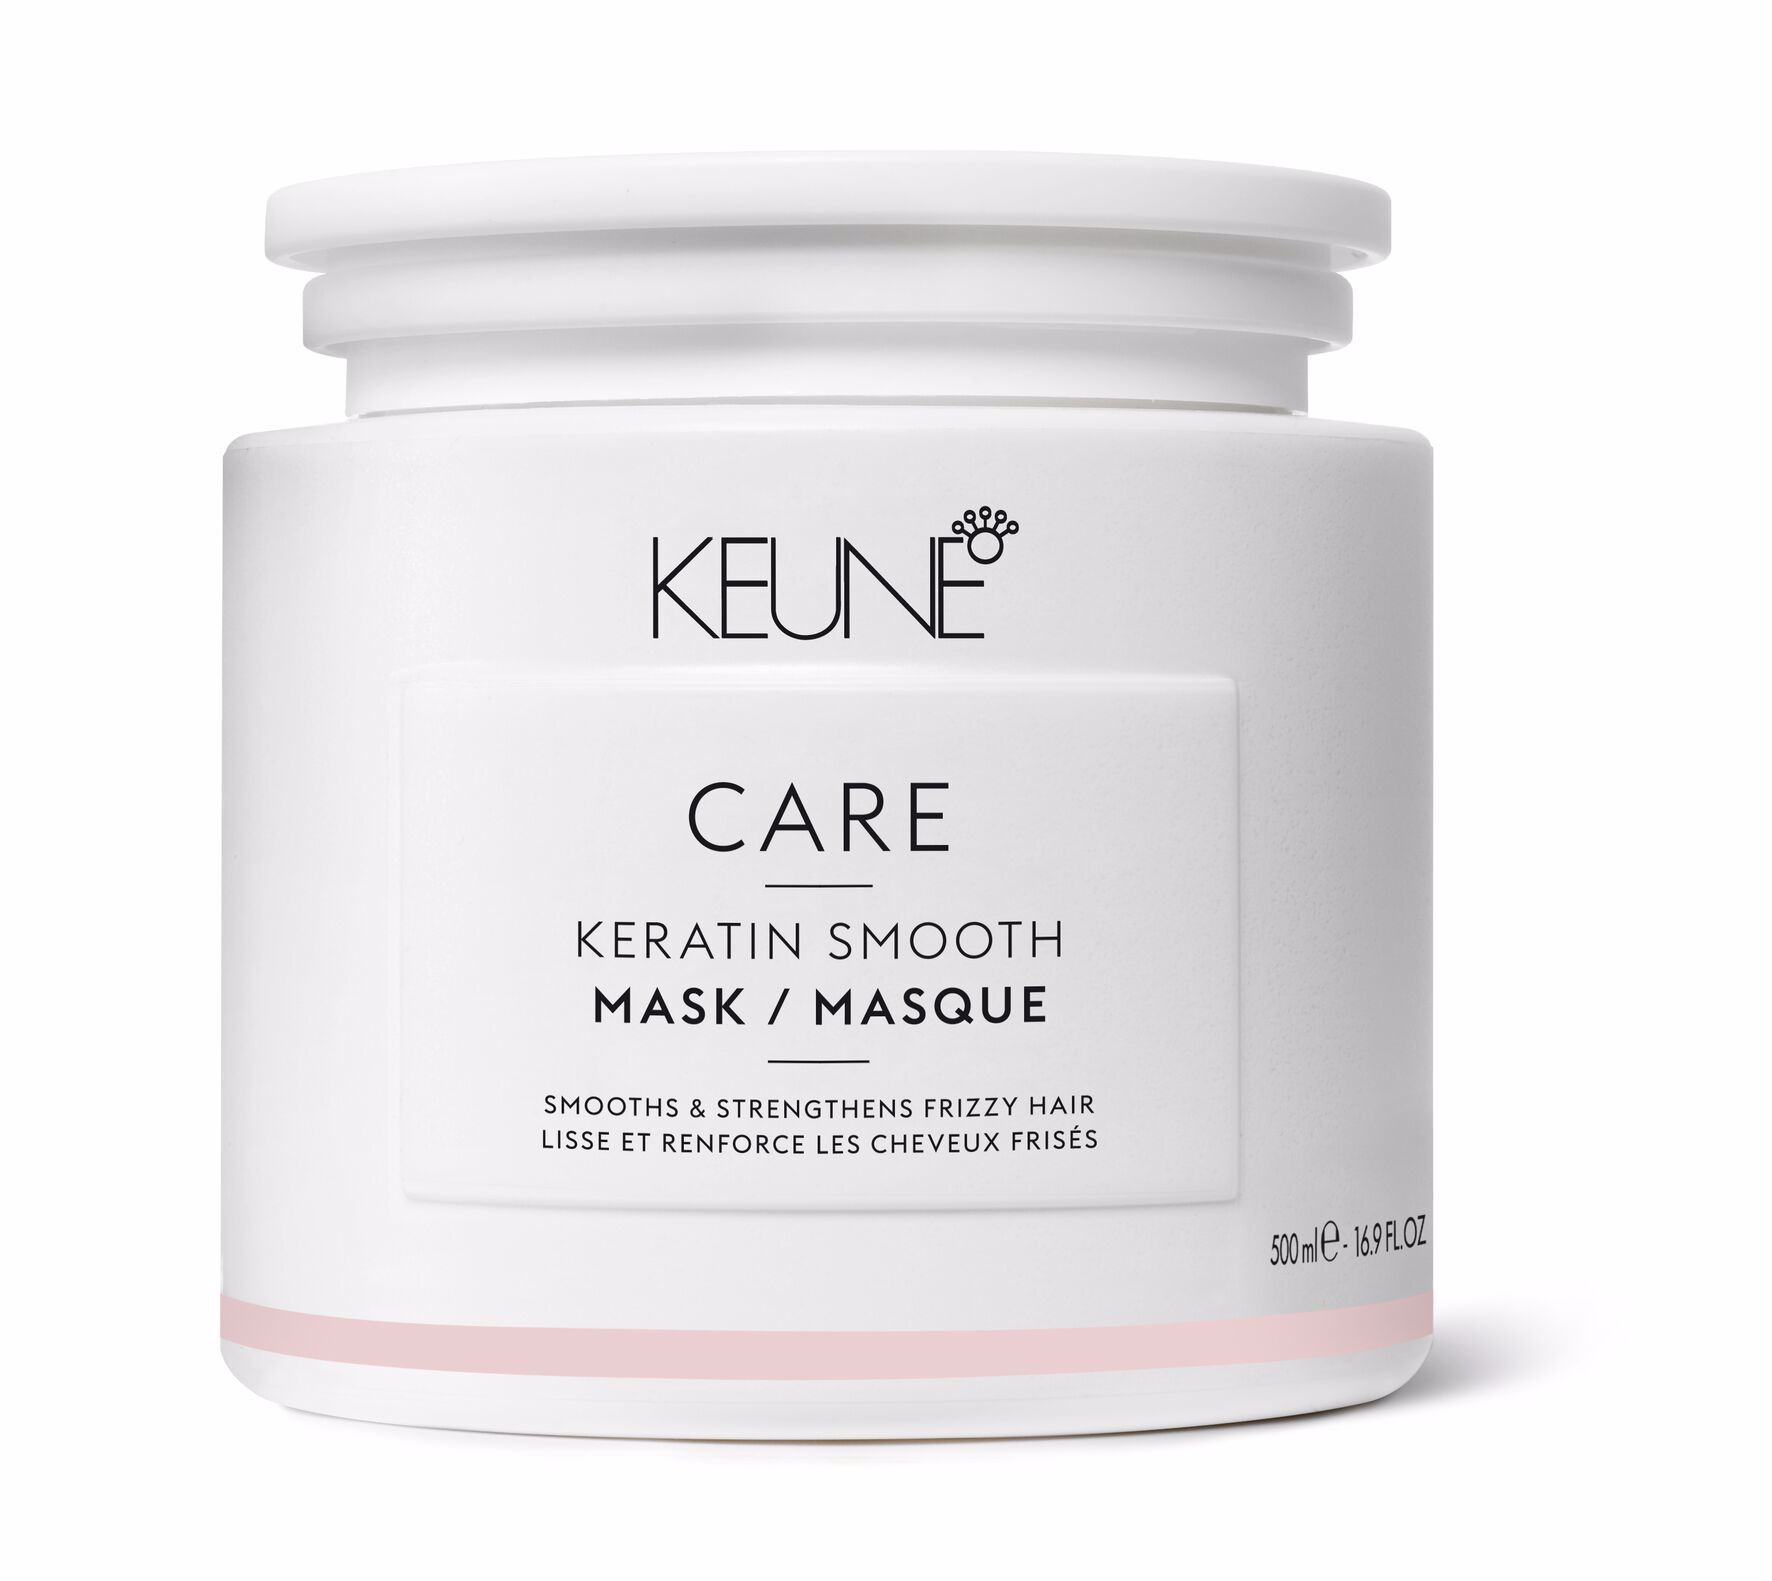 Le CARE KERATIN SMOOTH MASK procure douceur et lissage à vos cheveux. Ce masque capillaire luxueux est enrichi en kératine et en Keravis, renforce les cheveux et combat efficacement les frisottis.